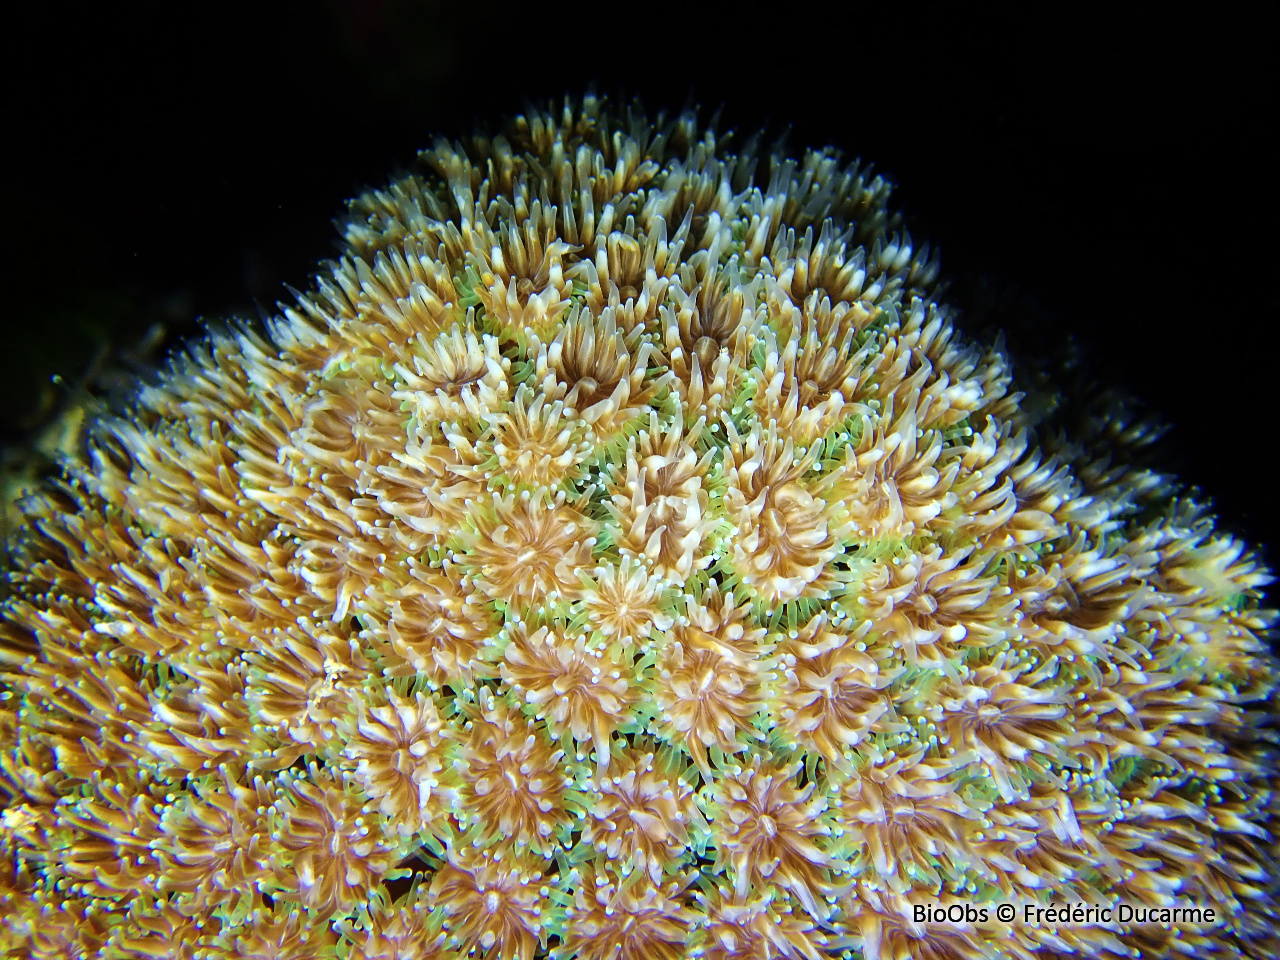 Corail piquant - Galaxea fascicularis - Frédéric Ducarme - BioObs